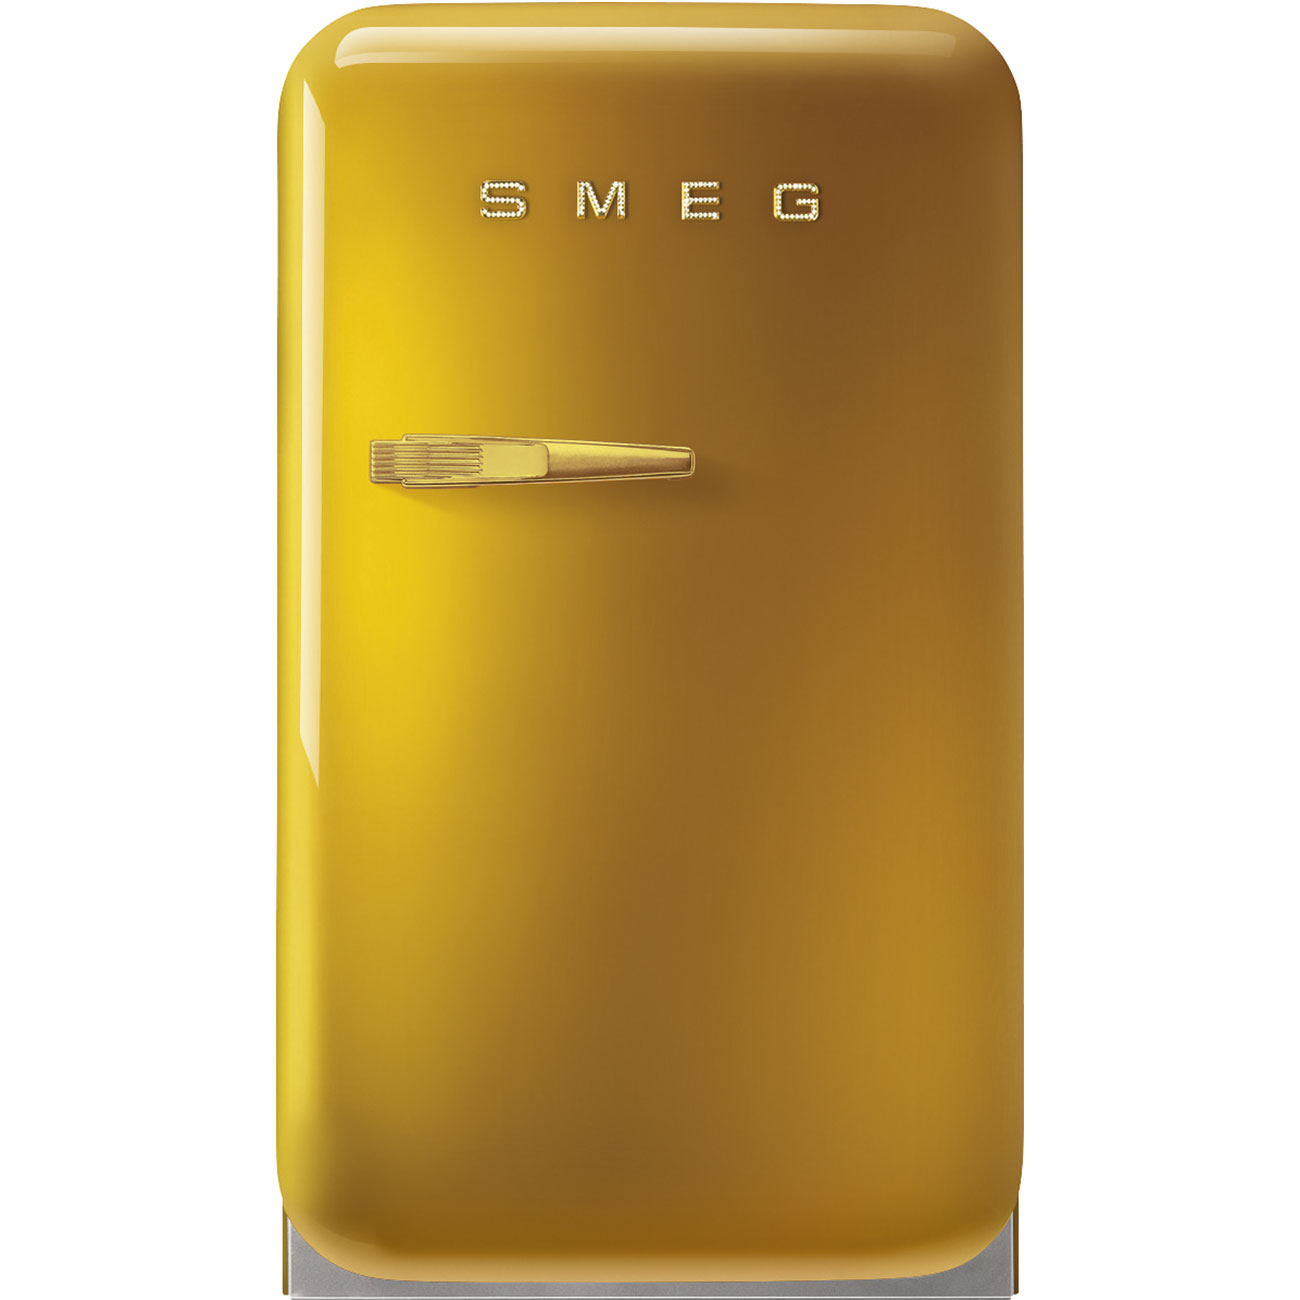 Gold refrigerator - Smeg_1